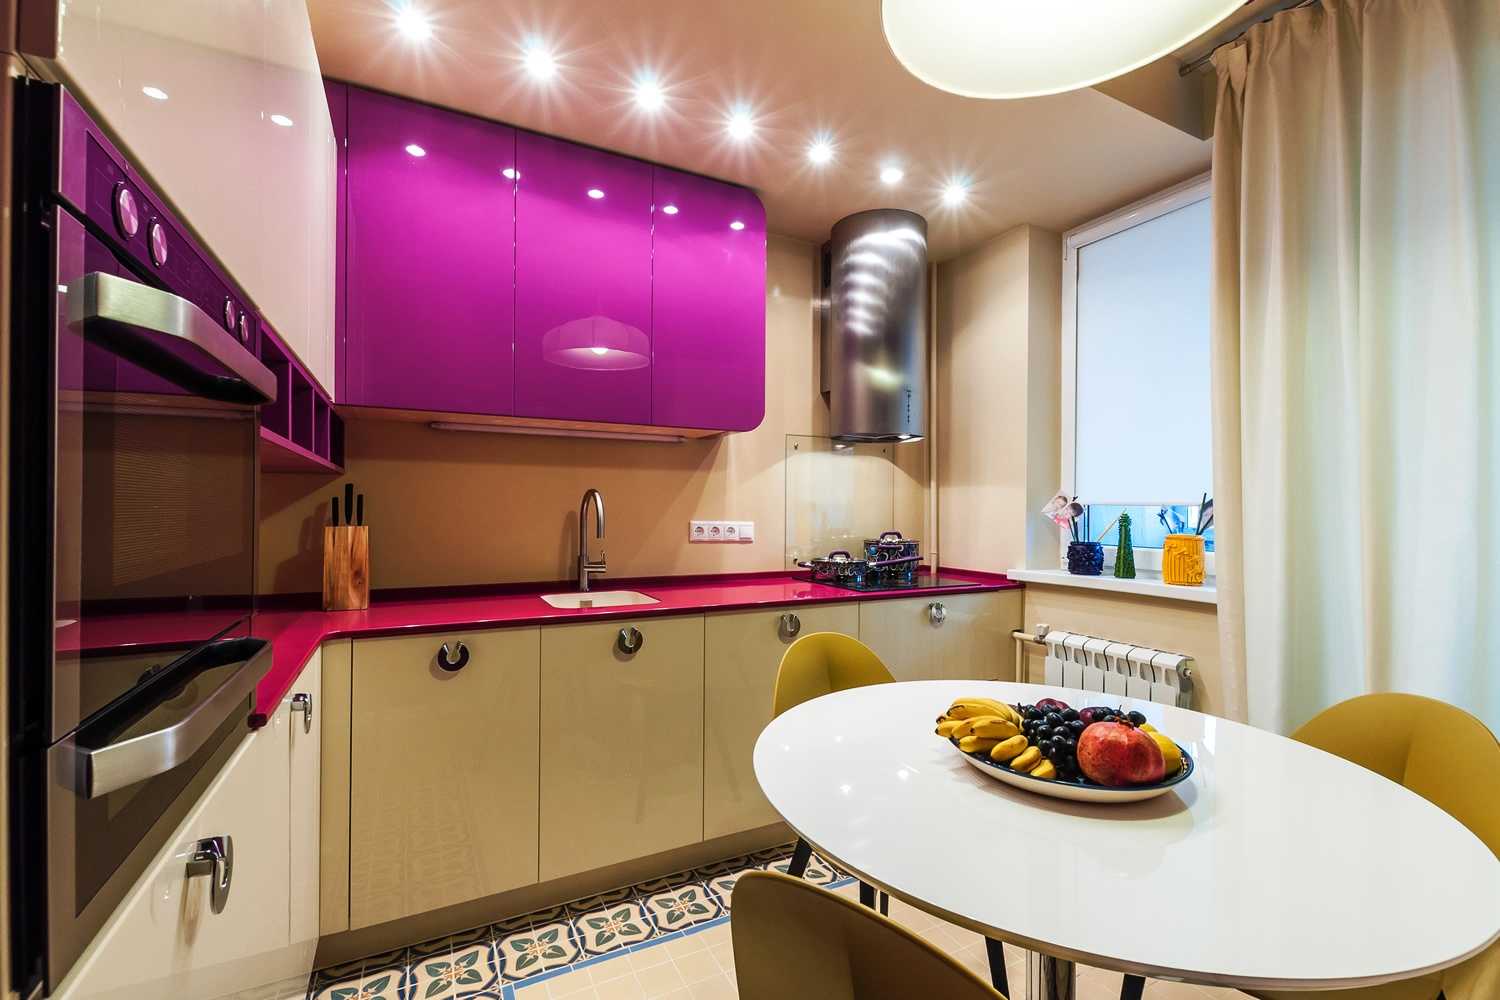 Дизайн кухни 6 кв м фото хрущевки с холодильником Какой стиль подойдет для маленького помещения Оптимальное цветовое решение Способы расширения пространства советы от профессионалов Варианты перепланировки